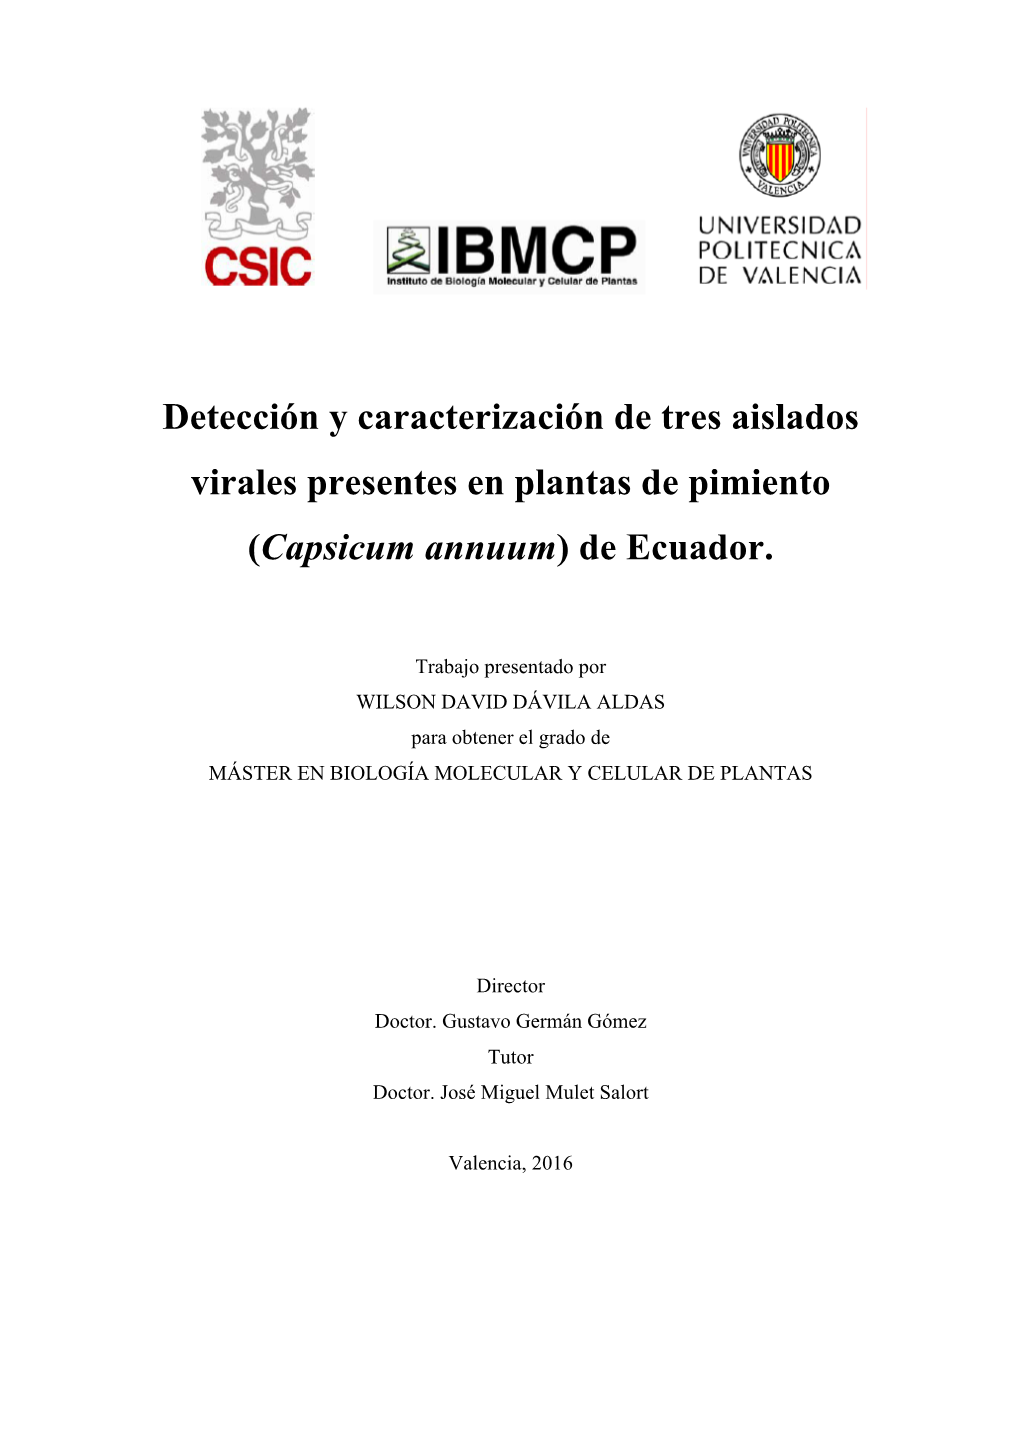 Detección Y Caracterización De Tres Aislados Virales Presentes En Plantas De Pimiento (Capsicum Annuum) De Ecuador